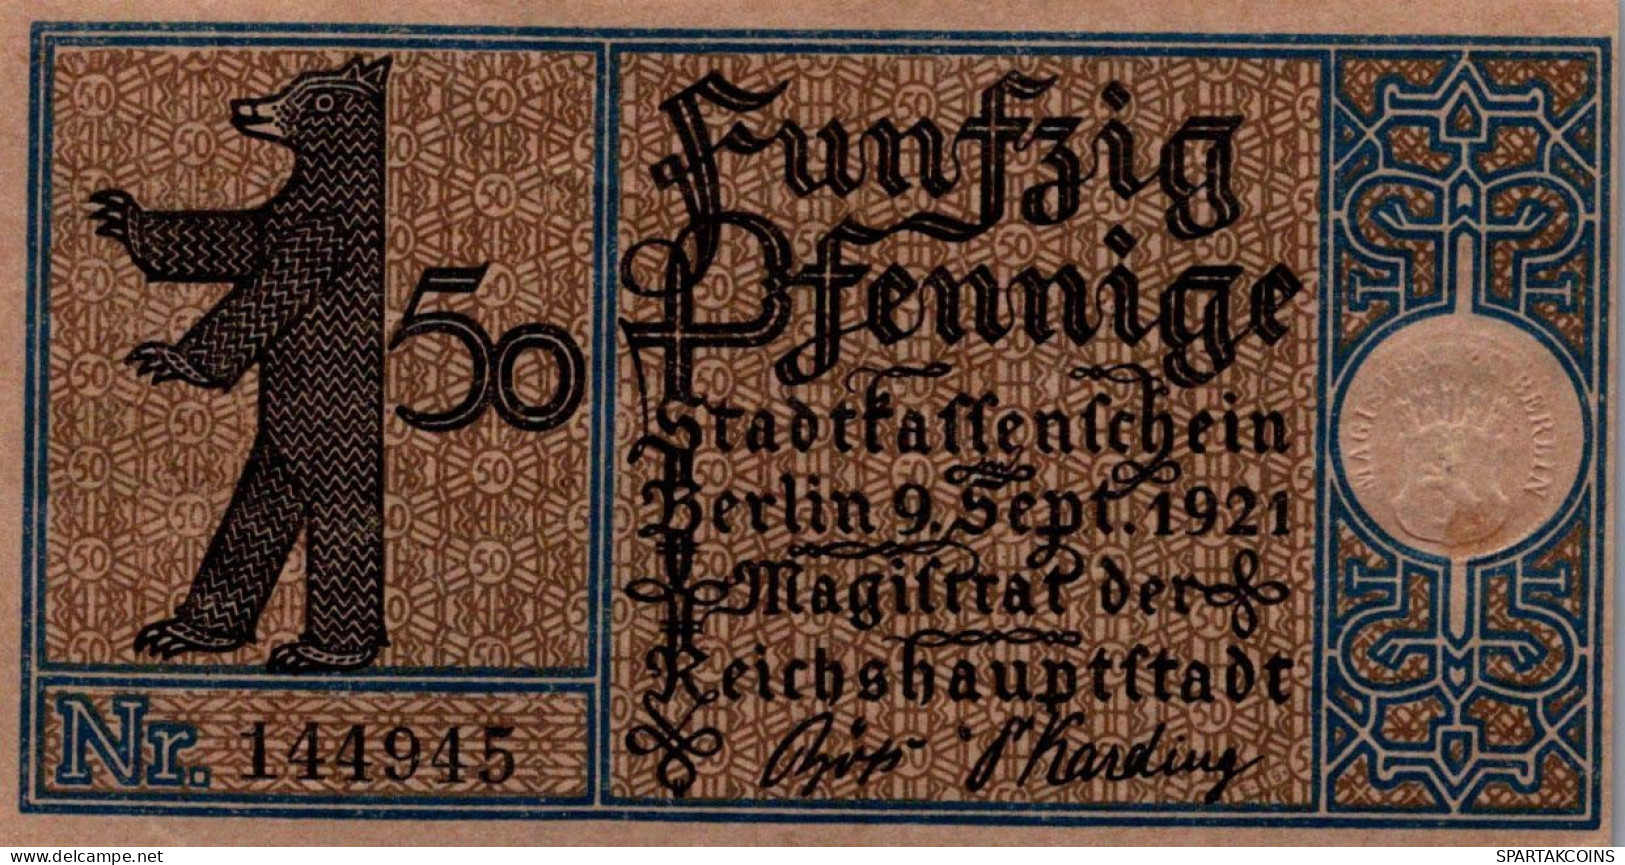 50 PFENNIG 1921 Stadt BERLIN UNC DEUTSCHLAND Notgeld Banknote #PA178.V - Lokale Ausgaben